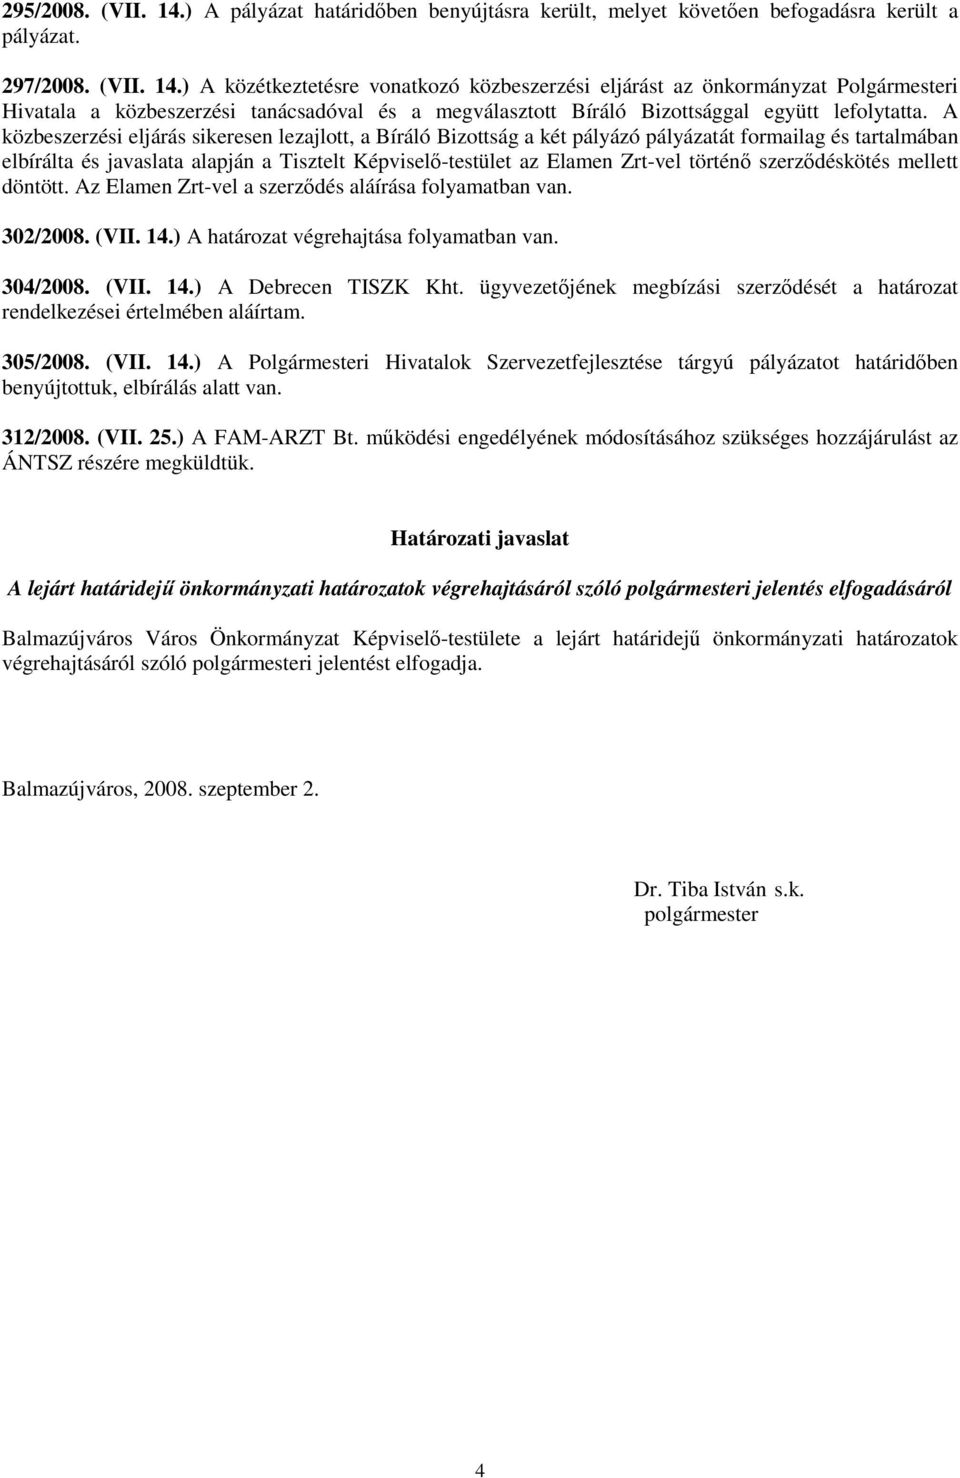 történı szerzıdéskötés mellett döntött. Az Elamen Zrt-vel a szerzıdés aláírása folyamatban van. 302/2008. (VII. 14.) A határozat végrehajtása folyamatban van. 304/2008. (VII. 14.) A Debrecen TISZK Kht.